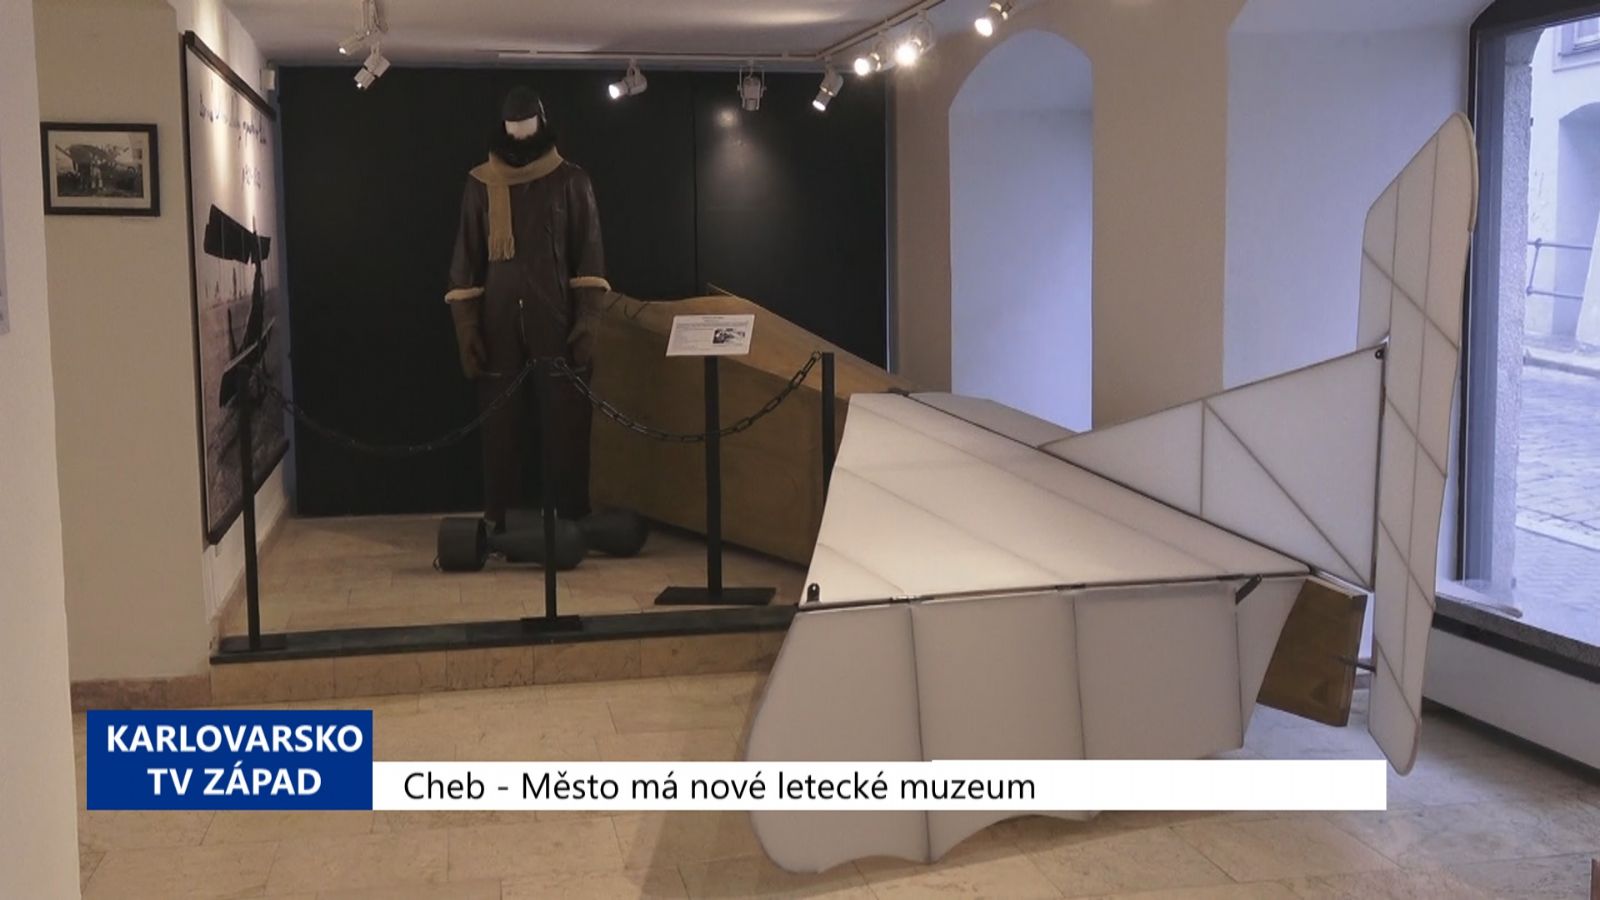 Cheb: Město má nové letecké muzeum (TV Západ)